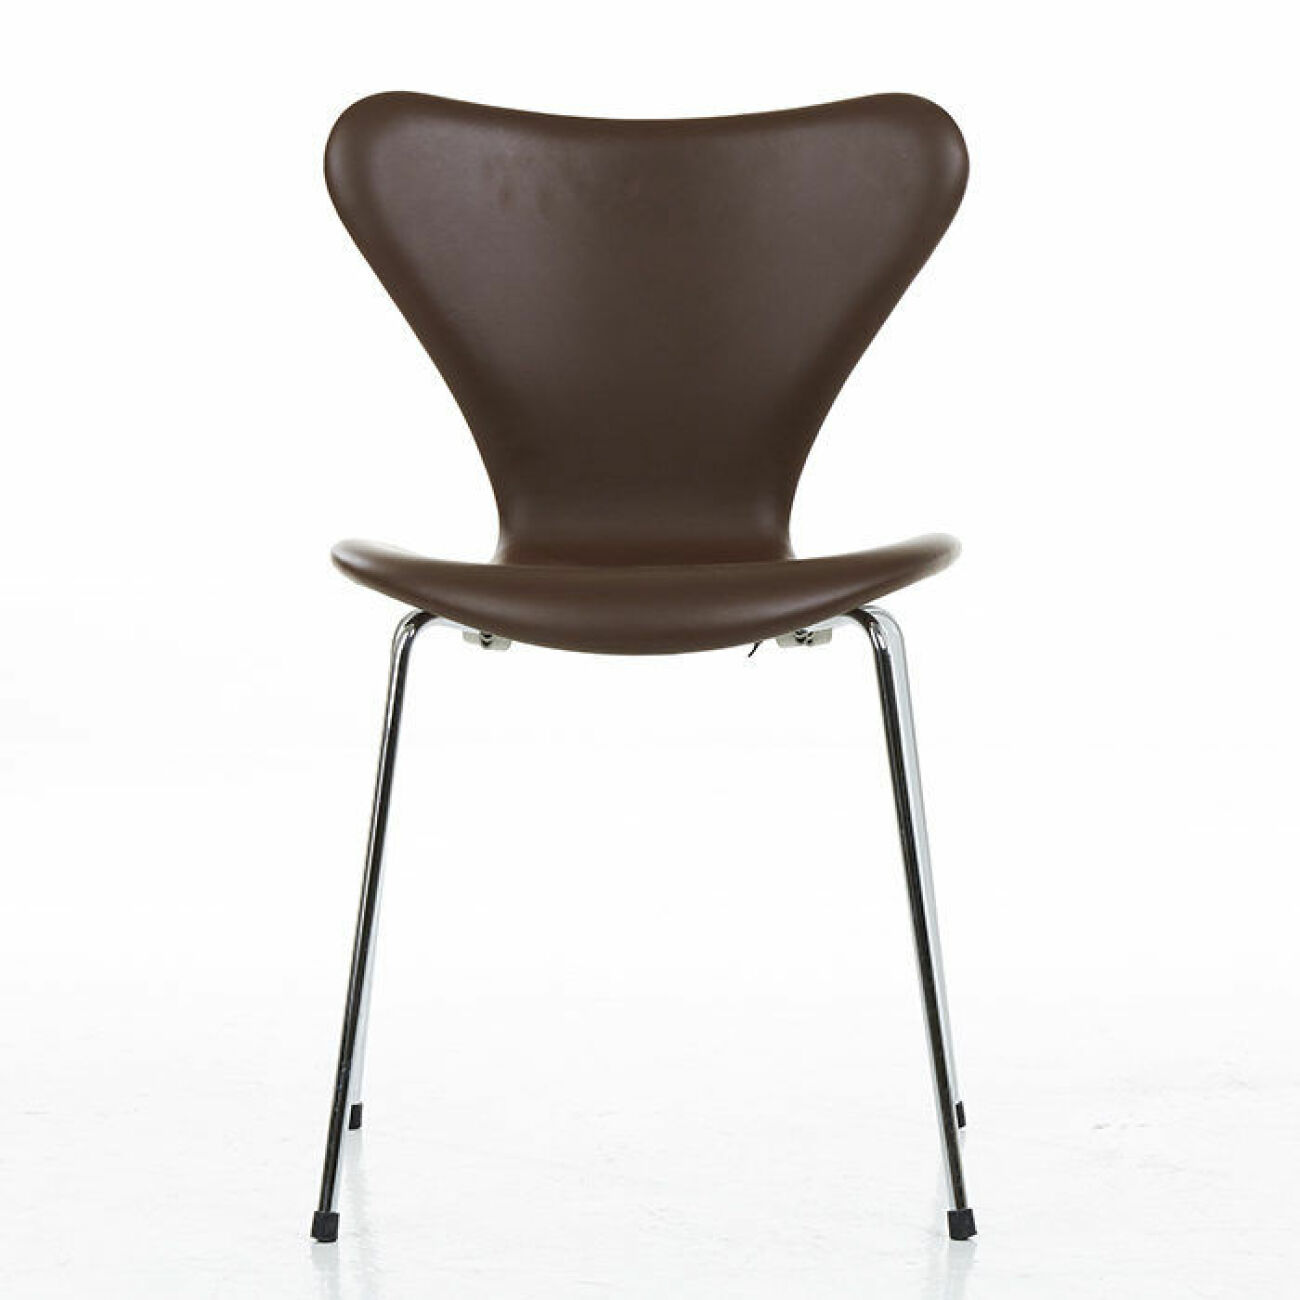 Stolen Sjuan formgiven av Arne Jacobsen